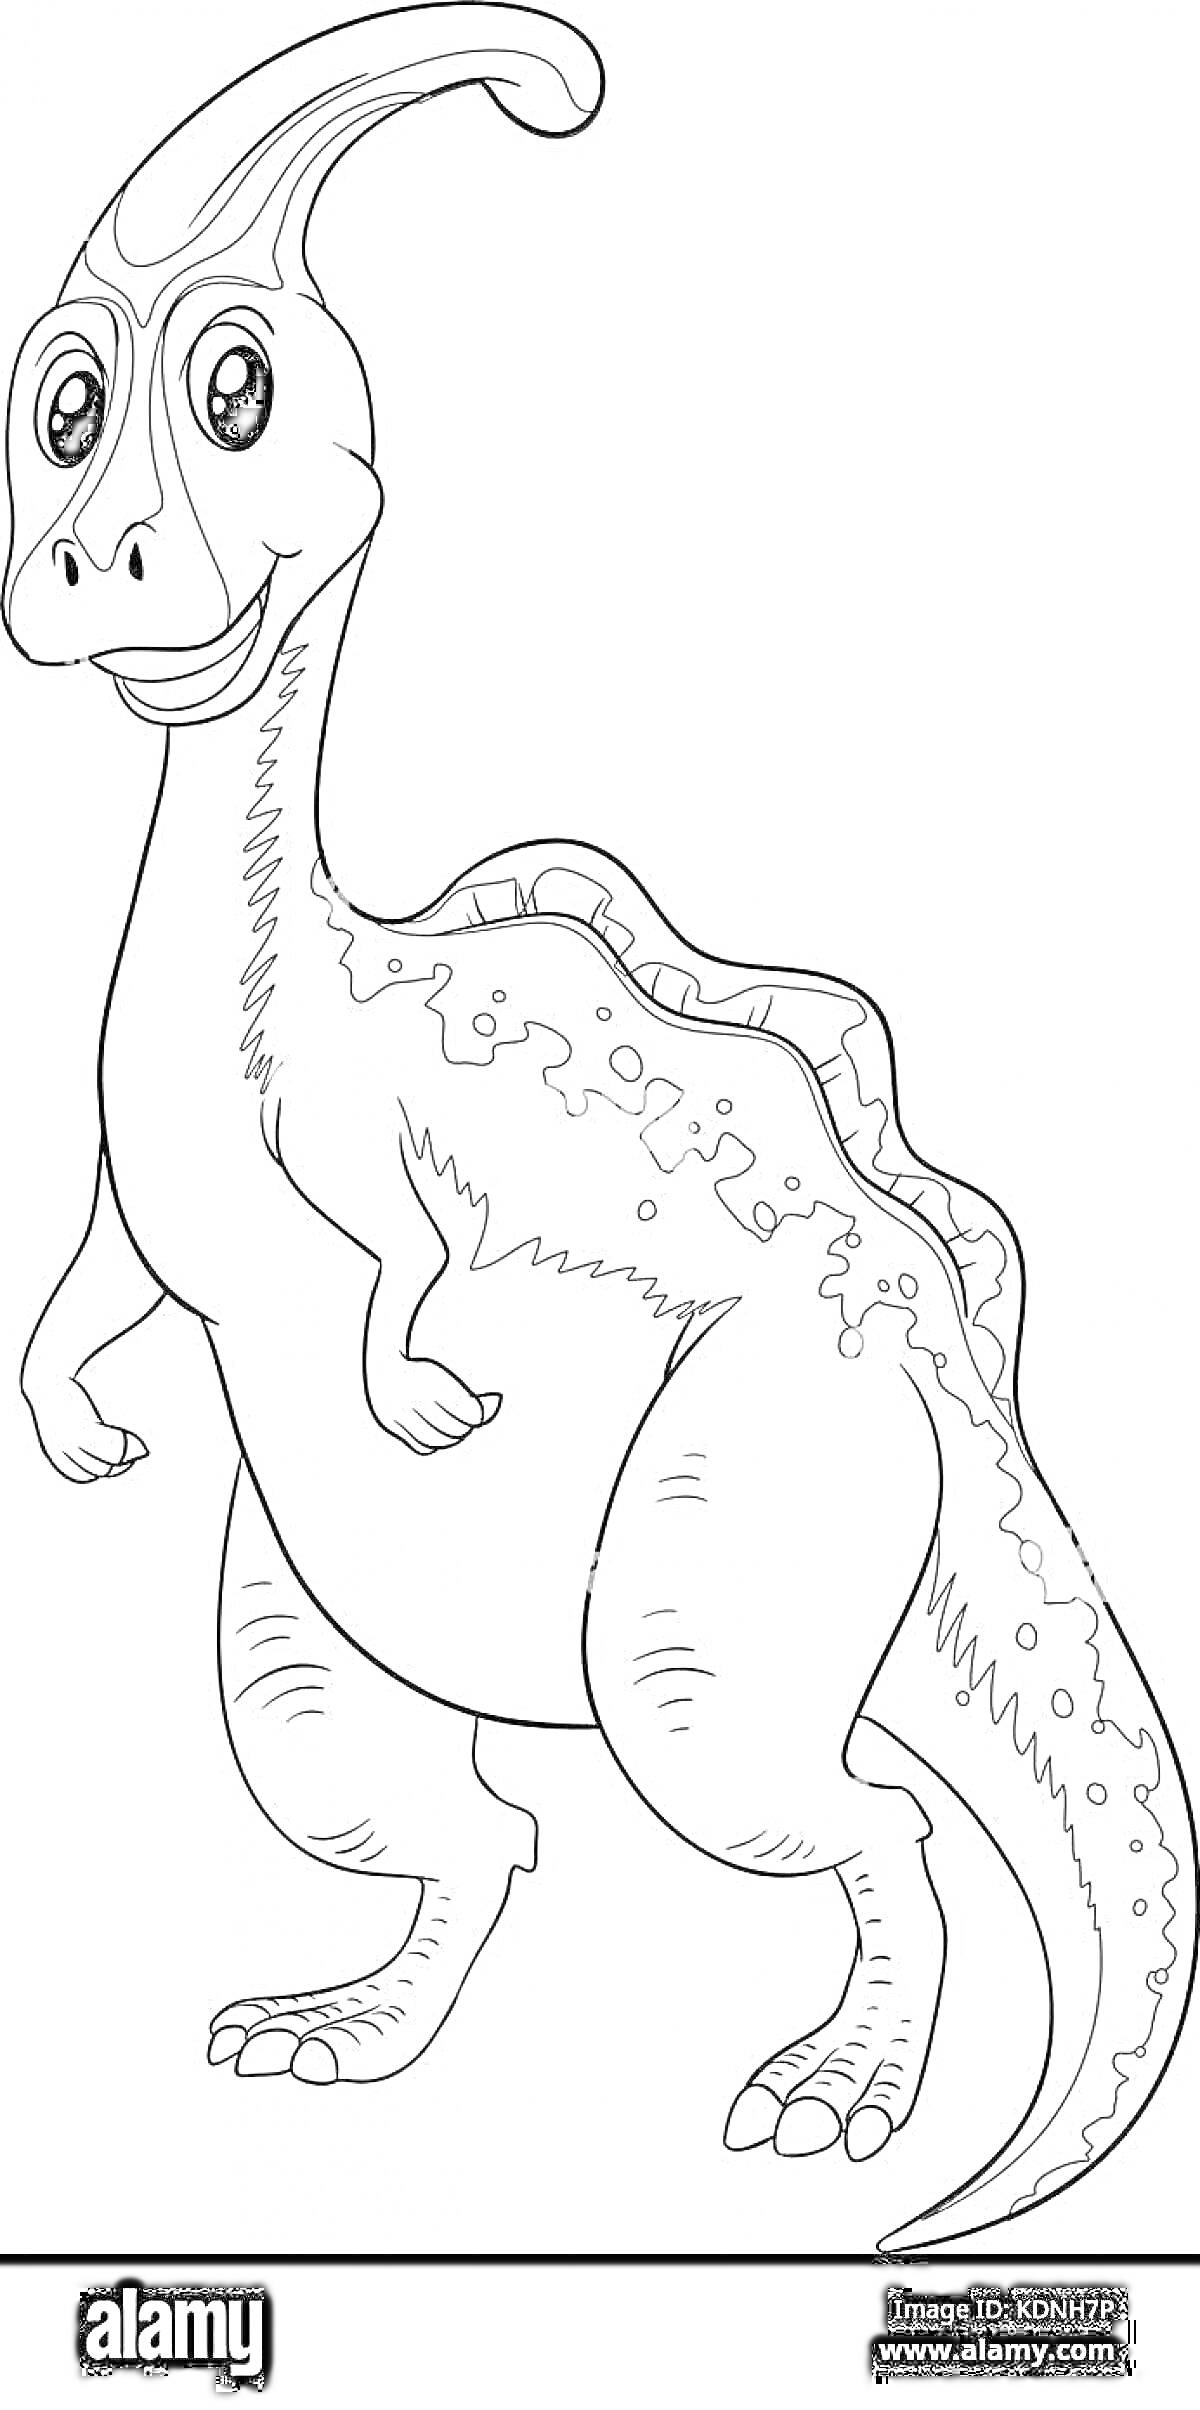 Раскраска Динозавр паразауролоф с гребнем на голове и улыбающимся лицом